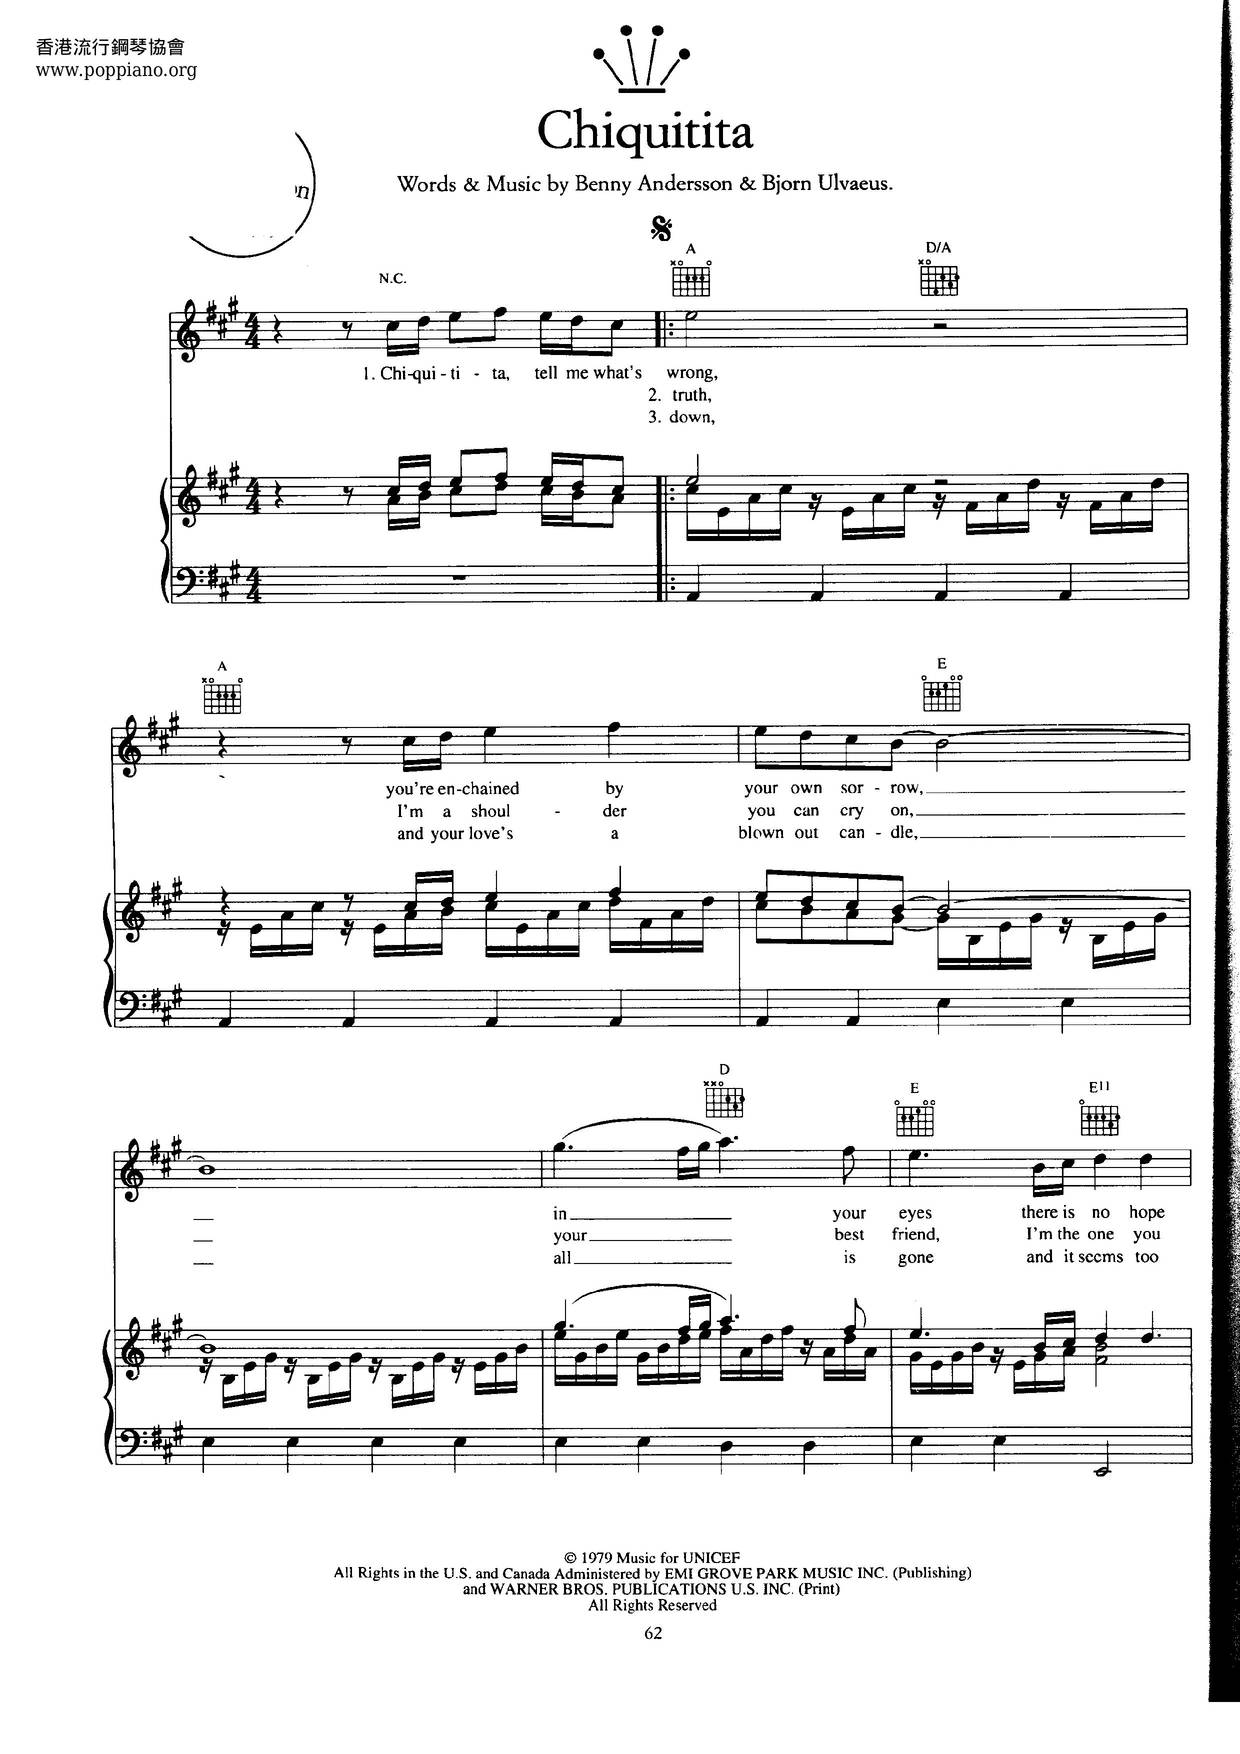 ABBA-Chiquitita Sheet Music pdf, - Free Score Download ★